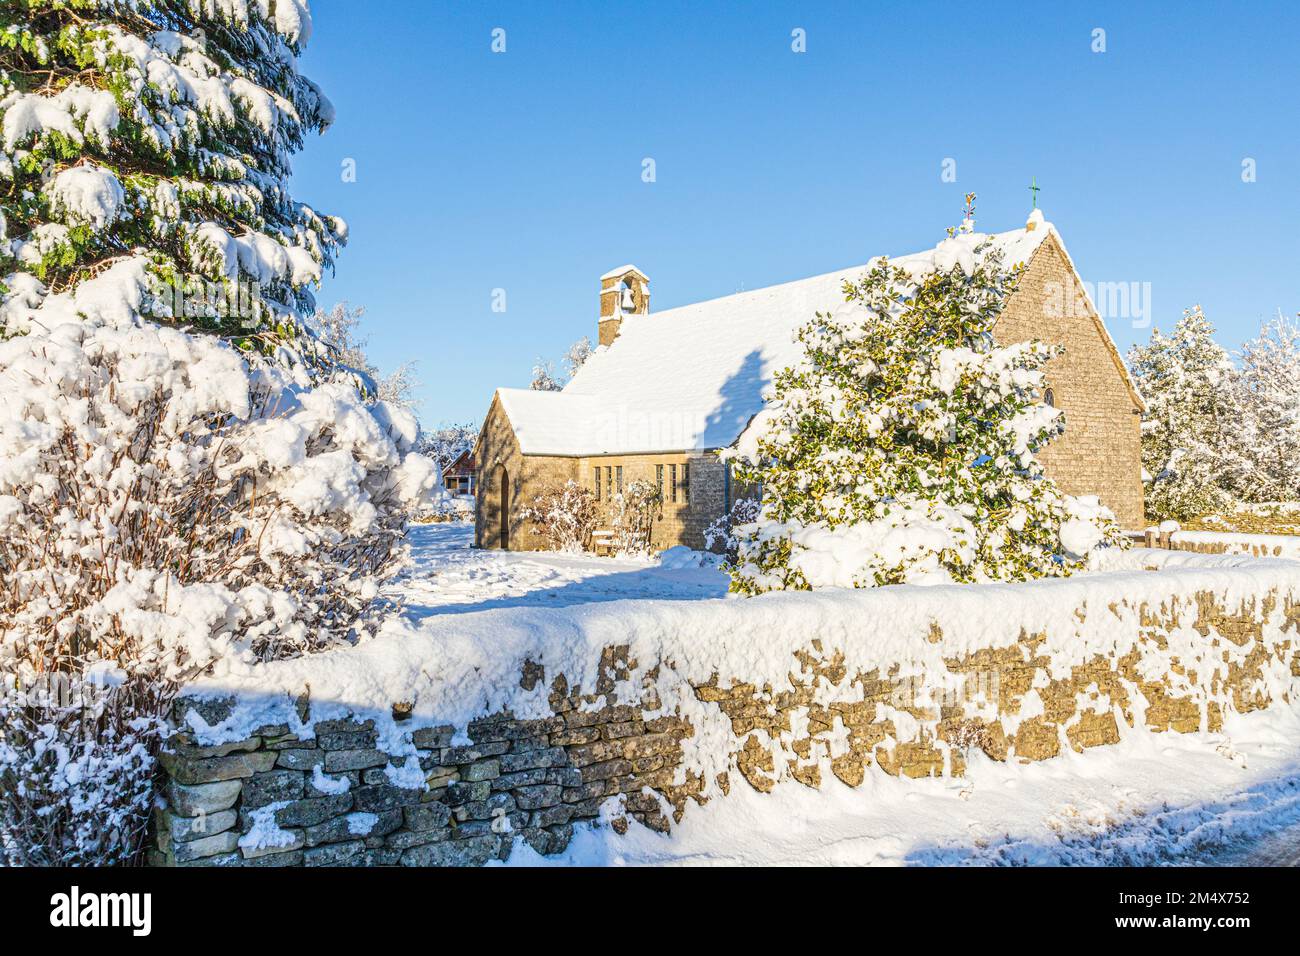 Début de l'hiver neige sur la petite église en pierre de St Mary à Hamlet (construite en 1958) dans le village de Cotswold de Birdlip, Gloucestershire, Angleterre Royaume-Uni Banque D'Images